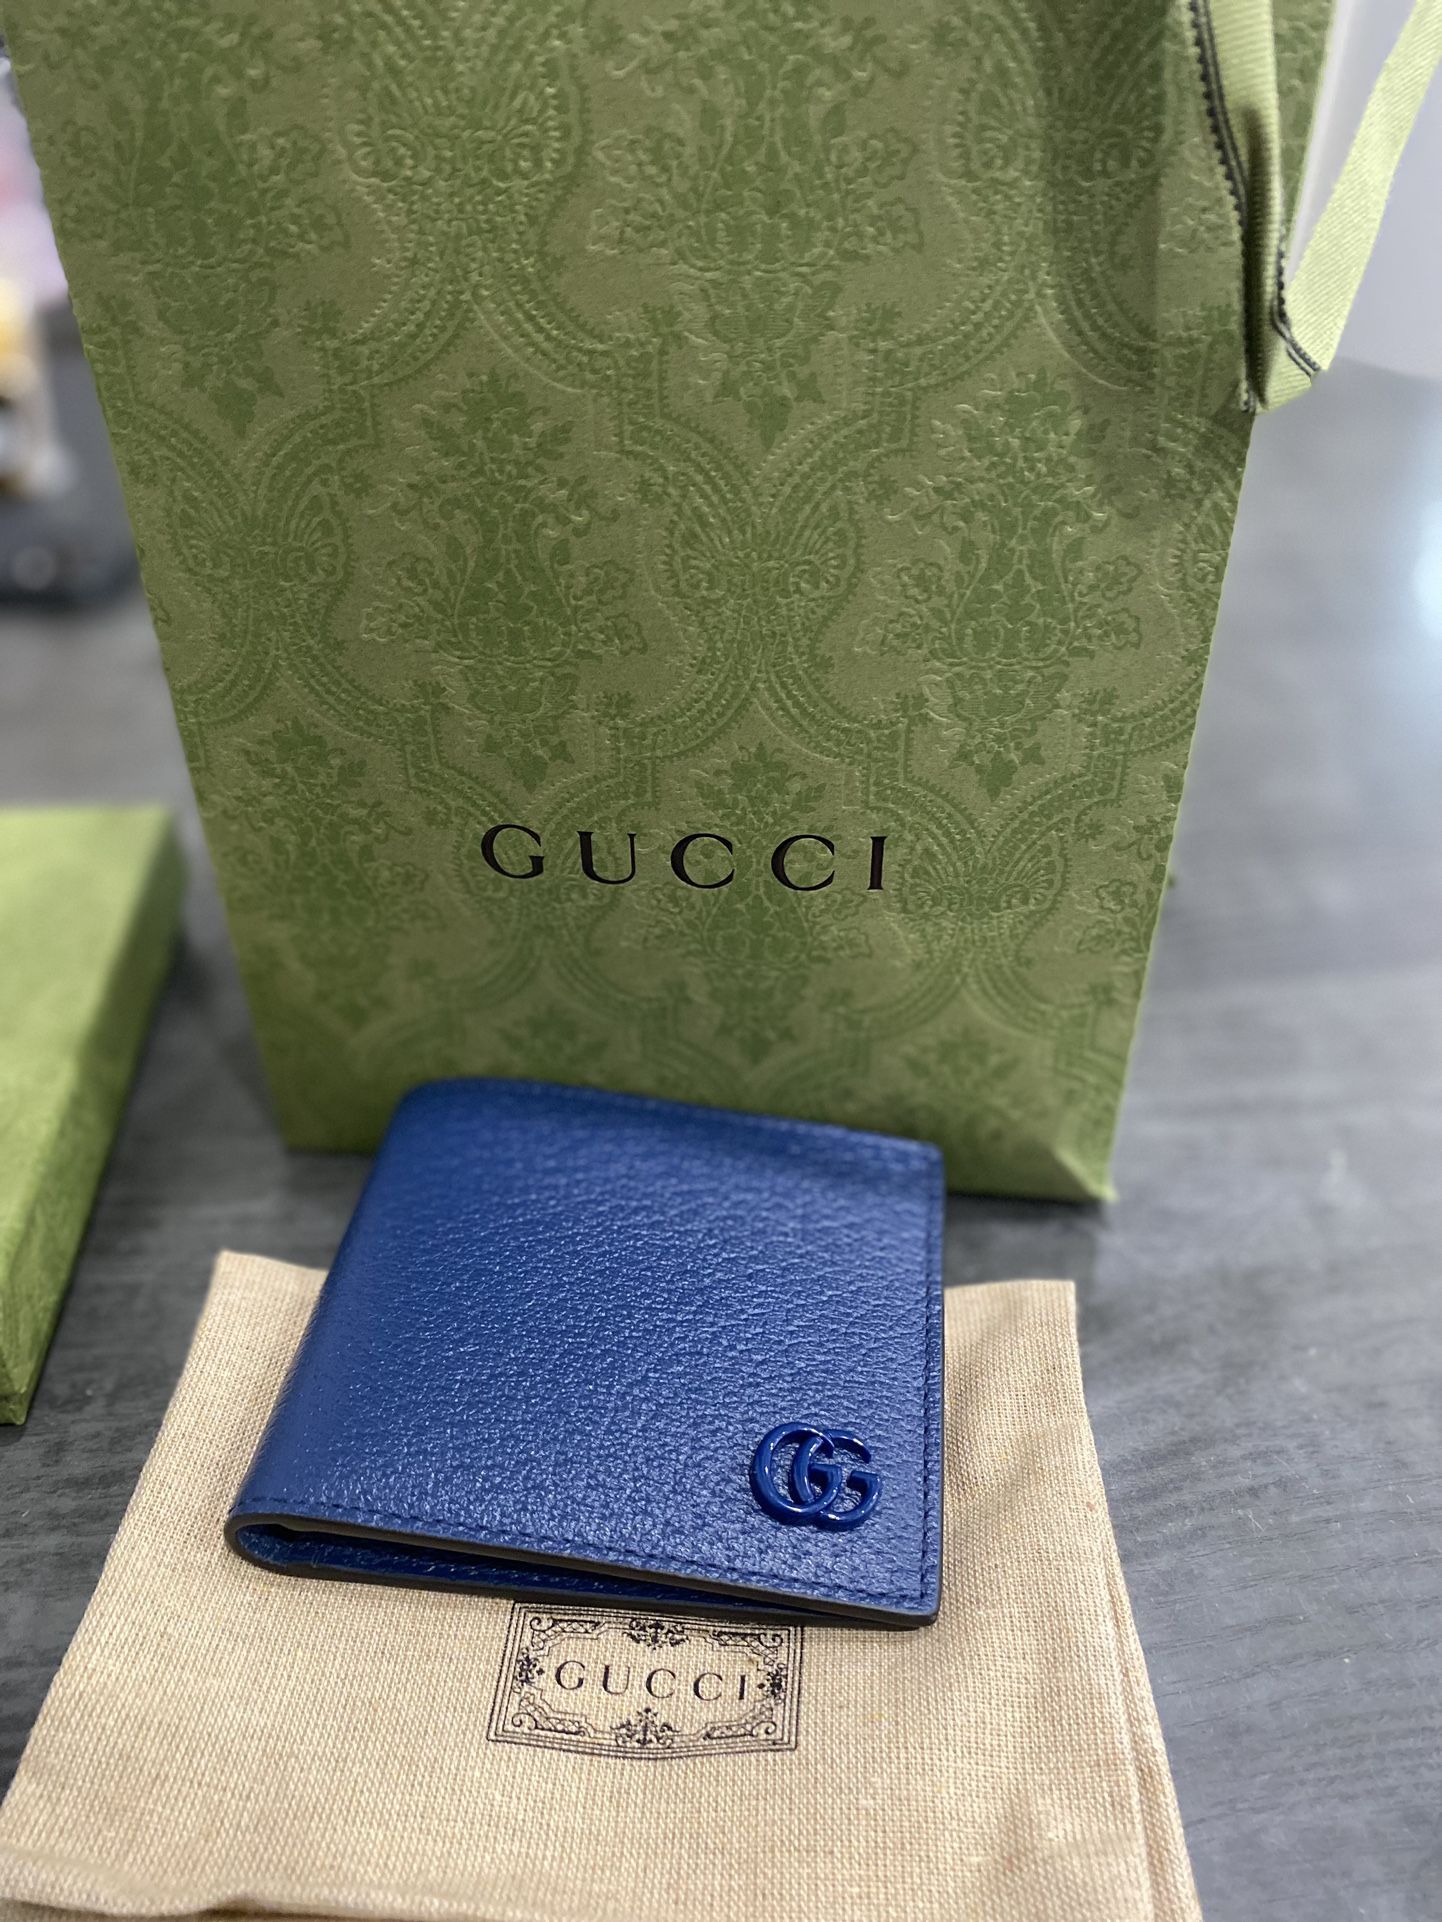 Gucci Wallet for Sale in Wichita, KS - OfferUp